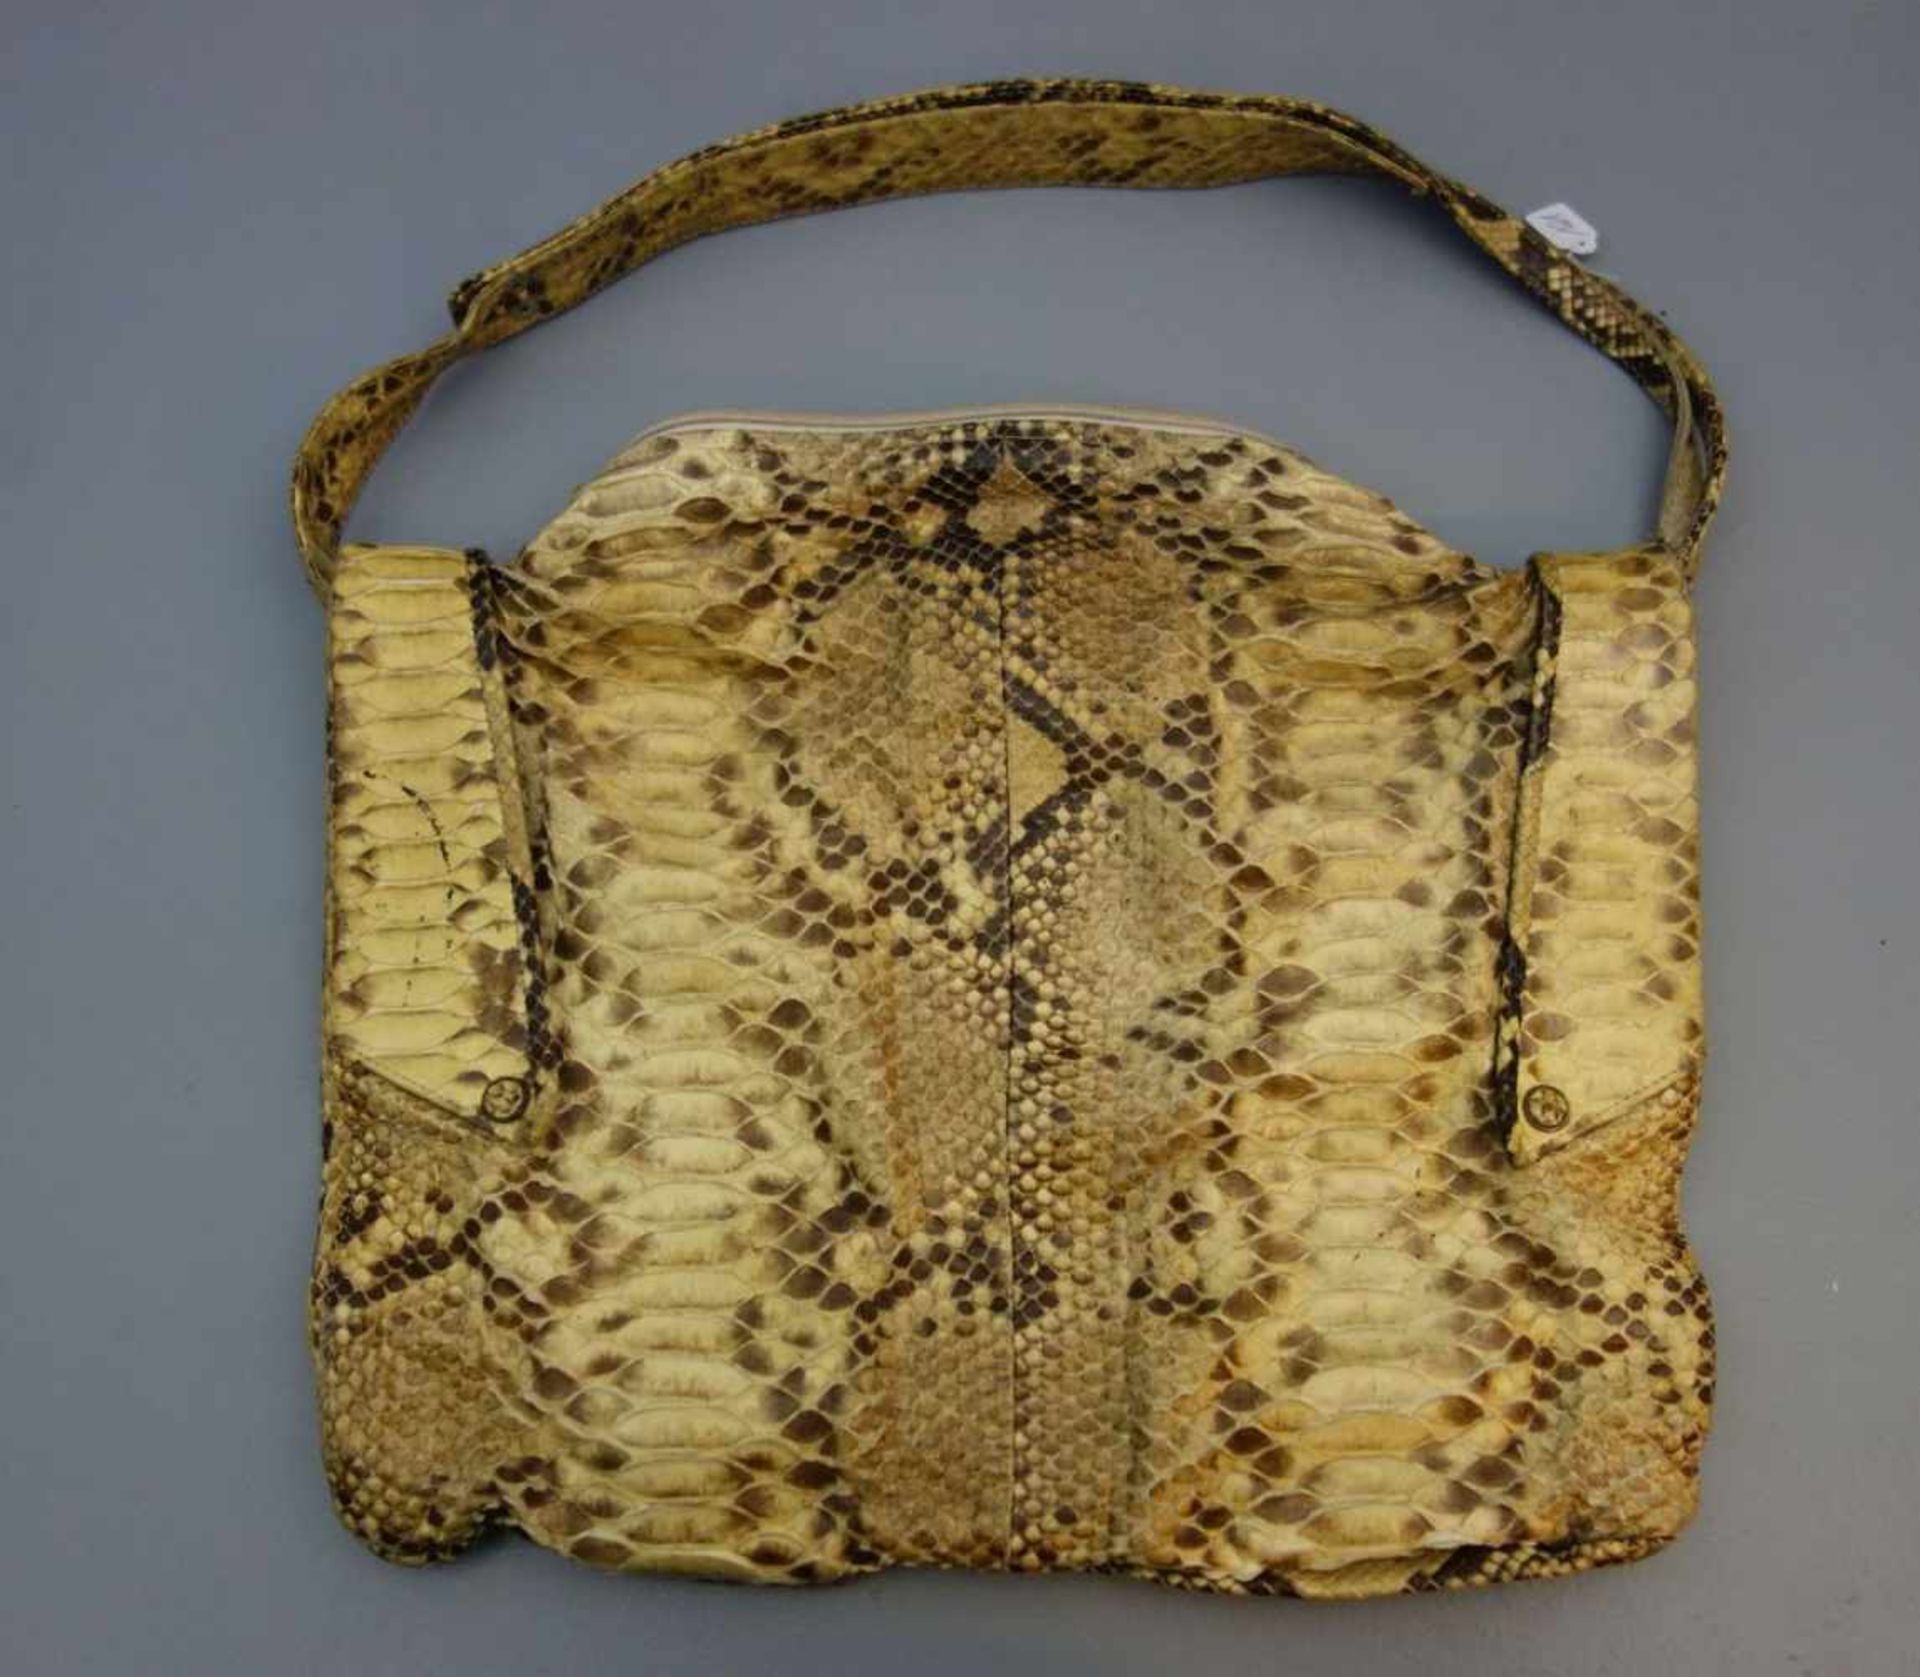 SCHLANGENLEDER - TASCHE / handbag - leather of a snake, Tasche in Beutelform mit kurzem Trageriemen,